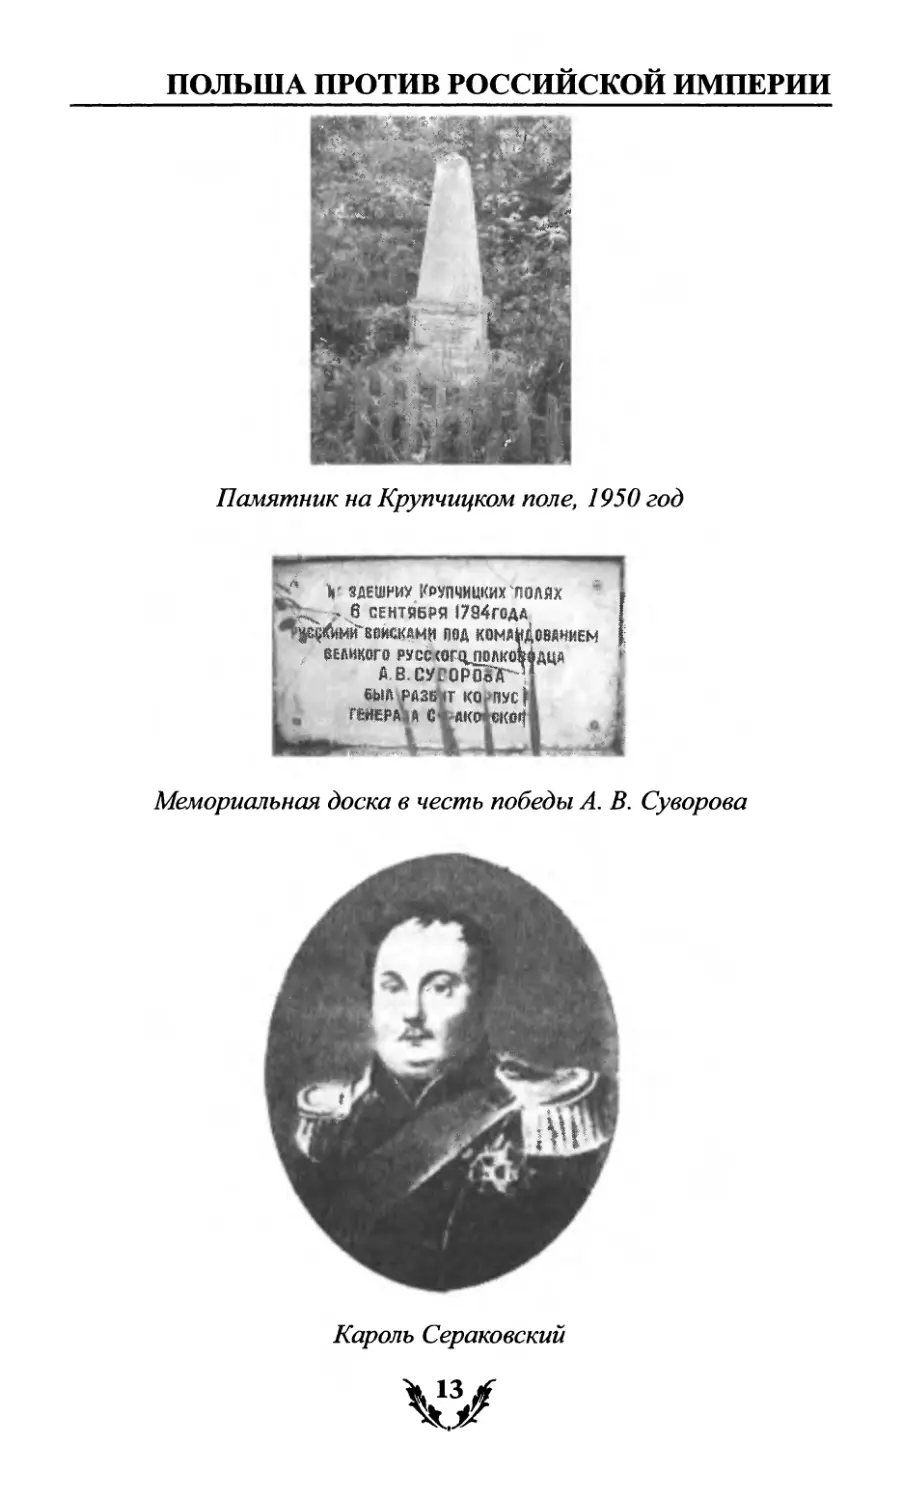 Мемориальная доска в честь победы А. В. Суворова
Кароль Сераковский